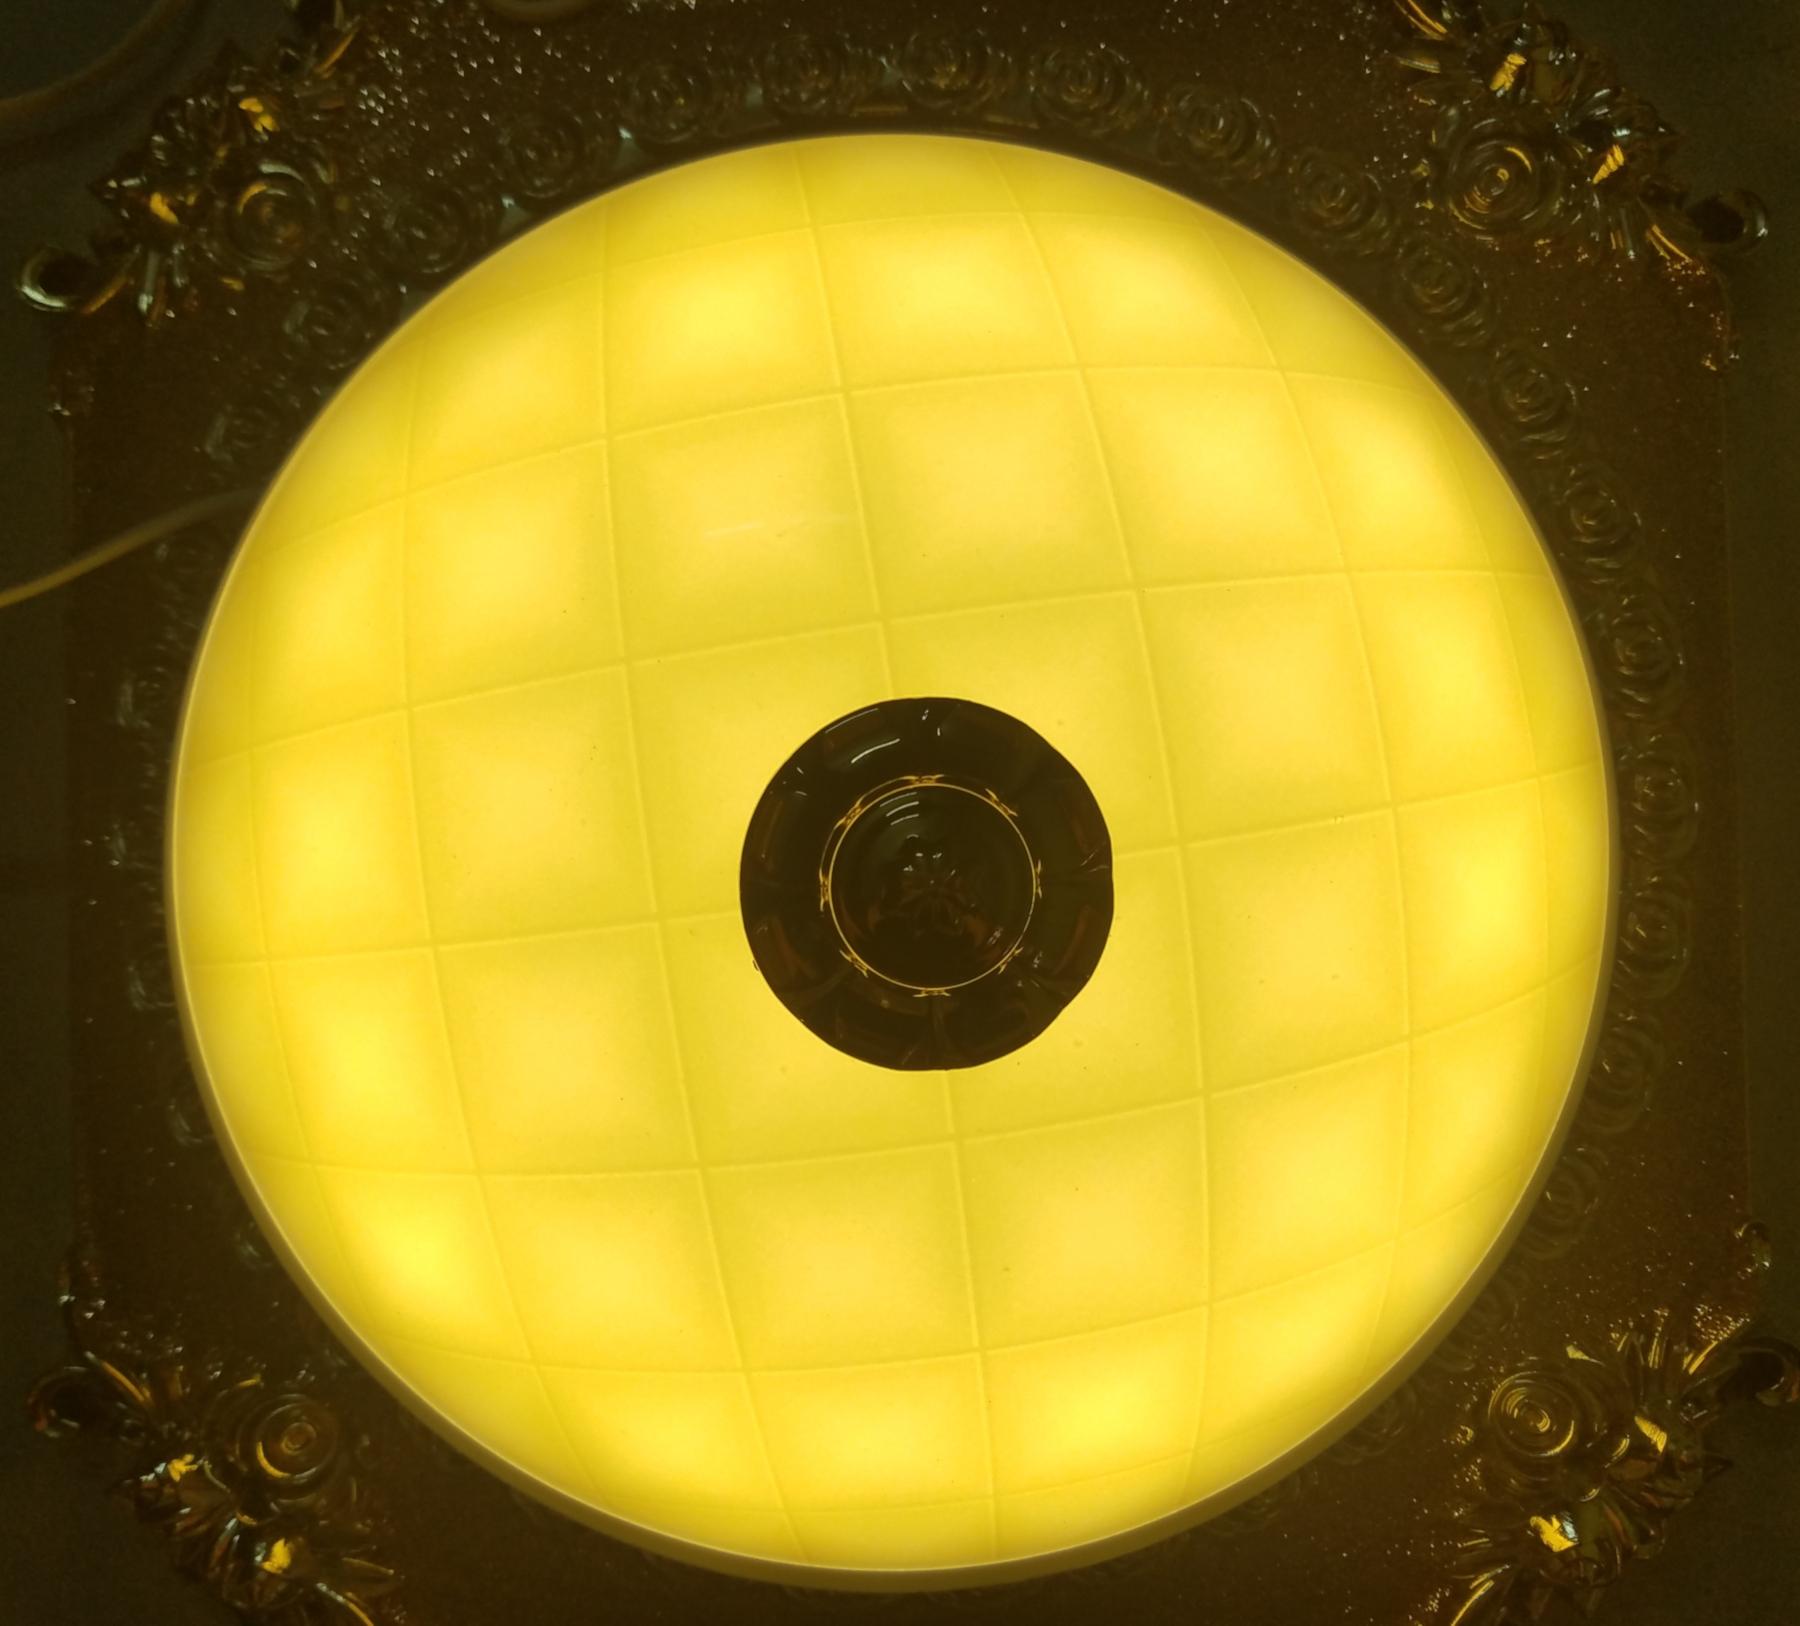 Đèn mâm  ốp trần 9029 vuông viền vàng vân gạch  3 màu thay đổi trắng,vàng,tự nhiên. ( Ceiling lamp )